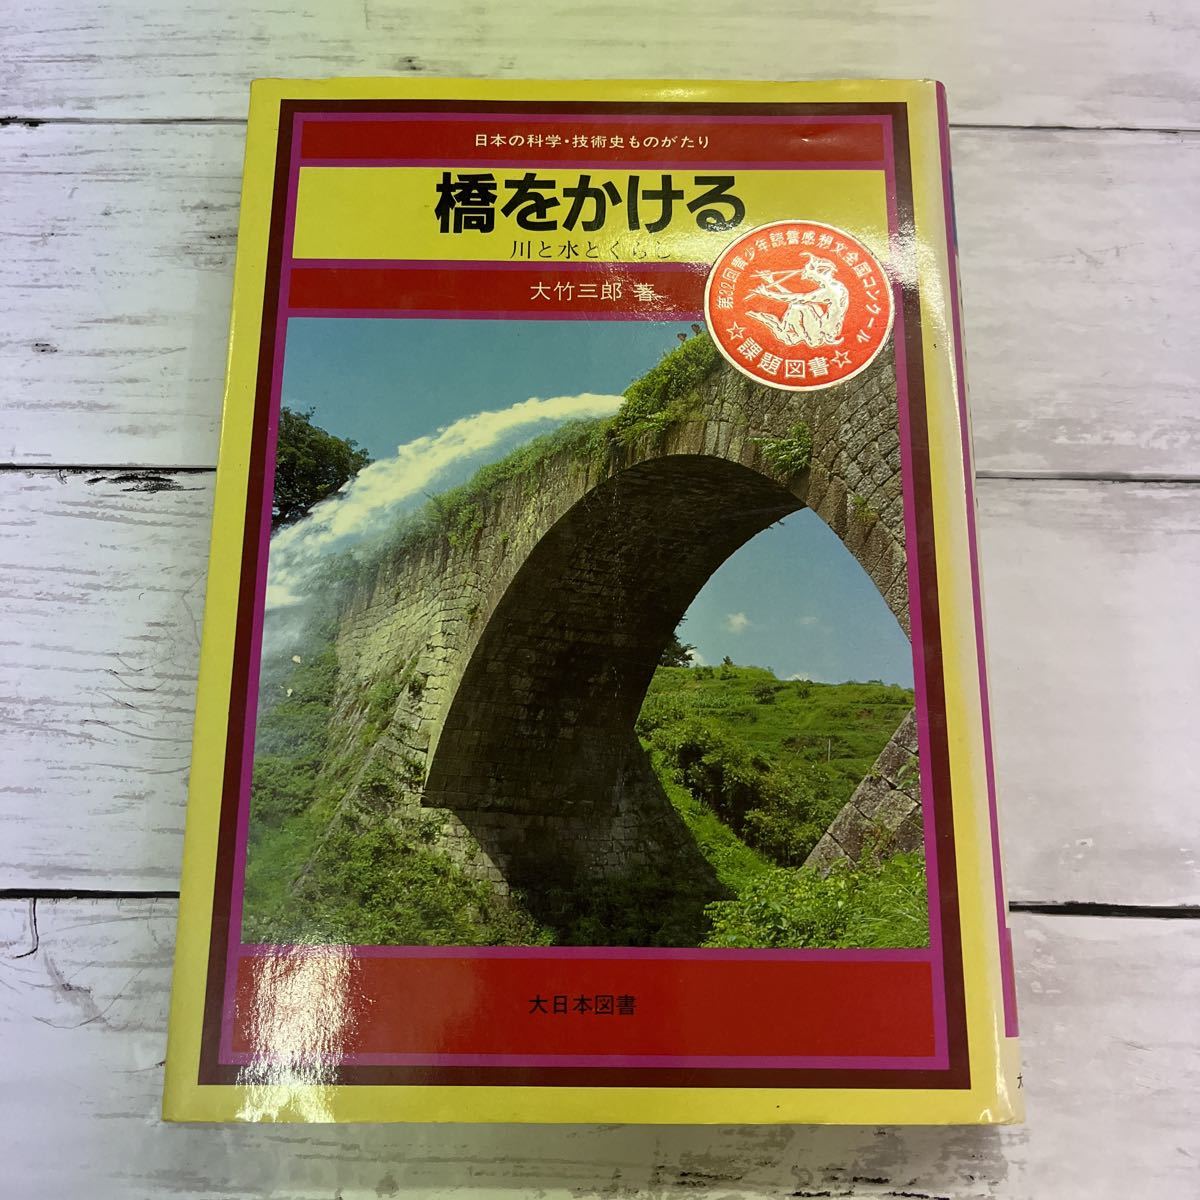 安い割引 卸し売り購入 橋をかける 大竹三郎 大日本図書 publiks.de publiks.de